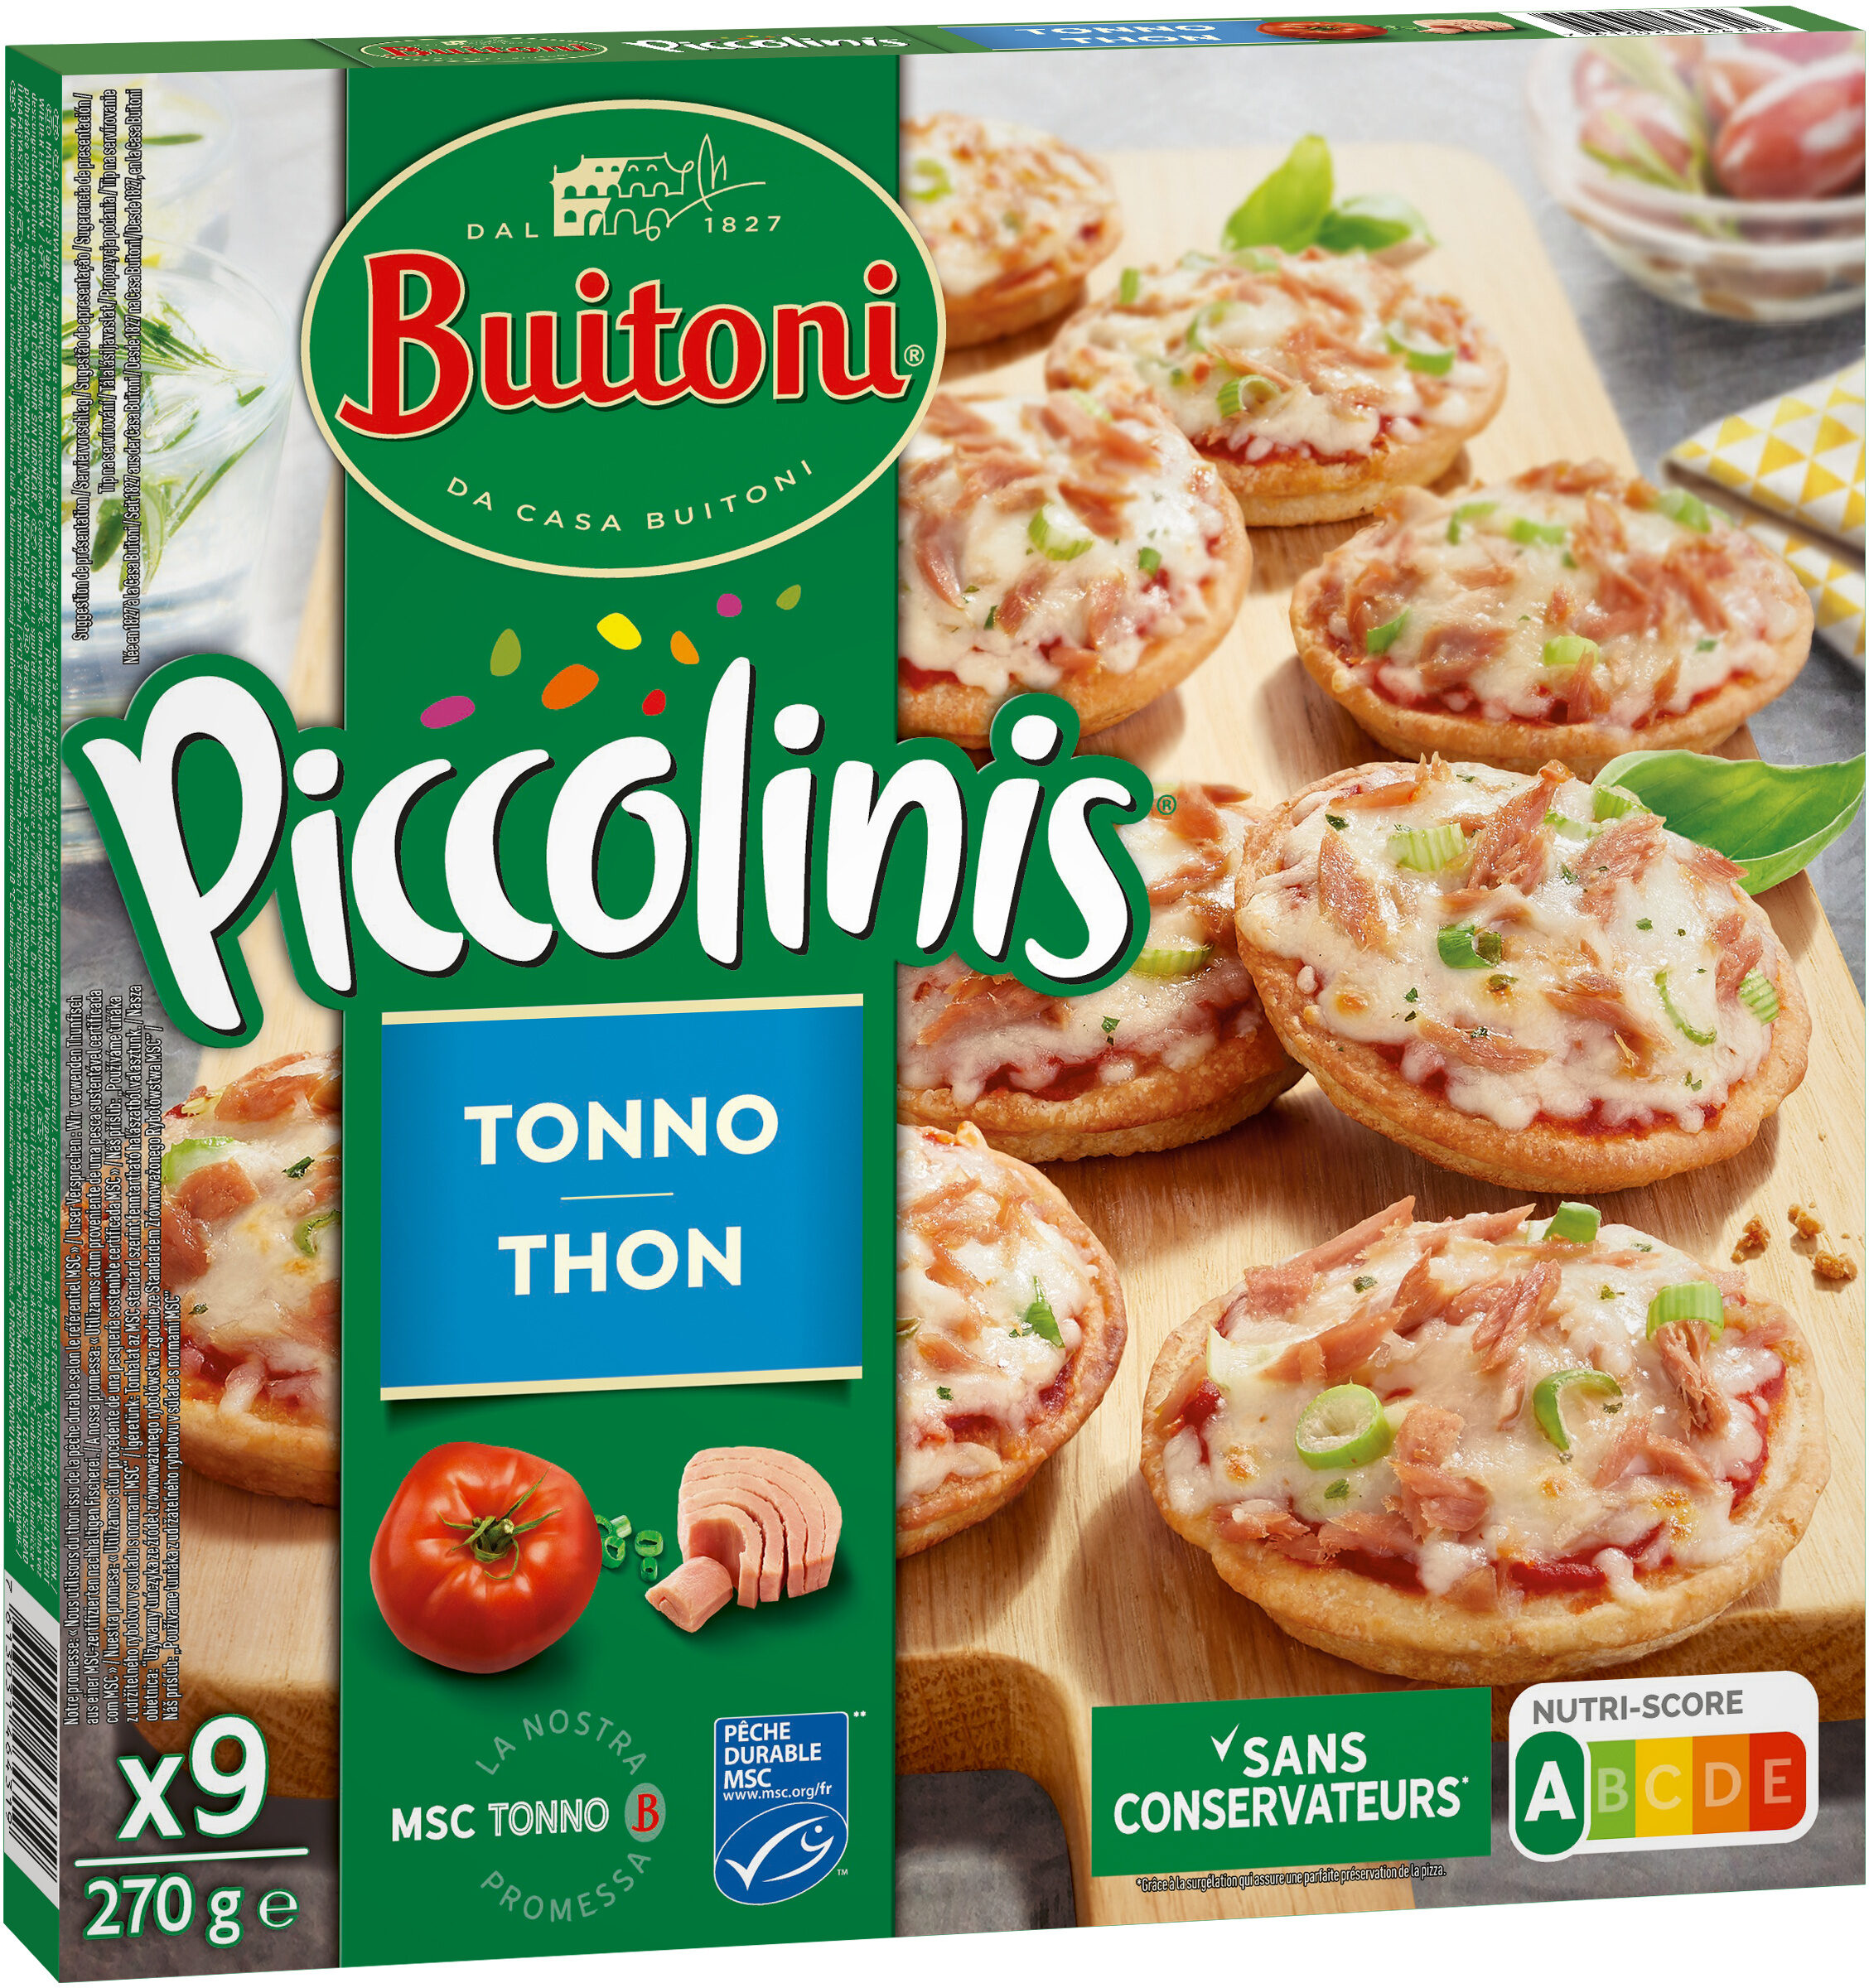 BUITONI PICCOLINIS mini-pizzas surgelées Thon 270g (9 pièces) - Produit